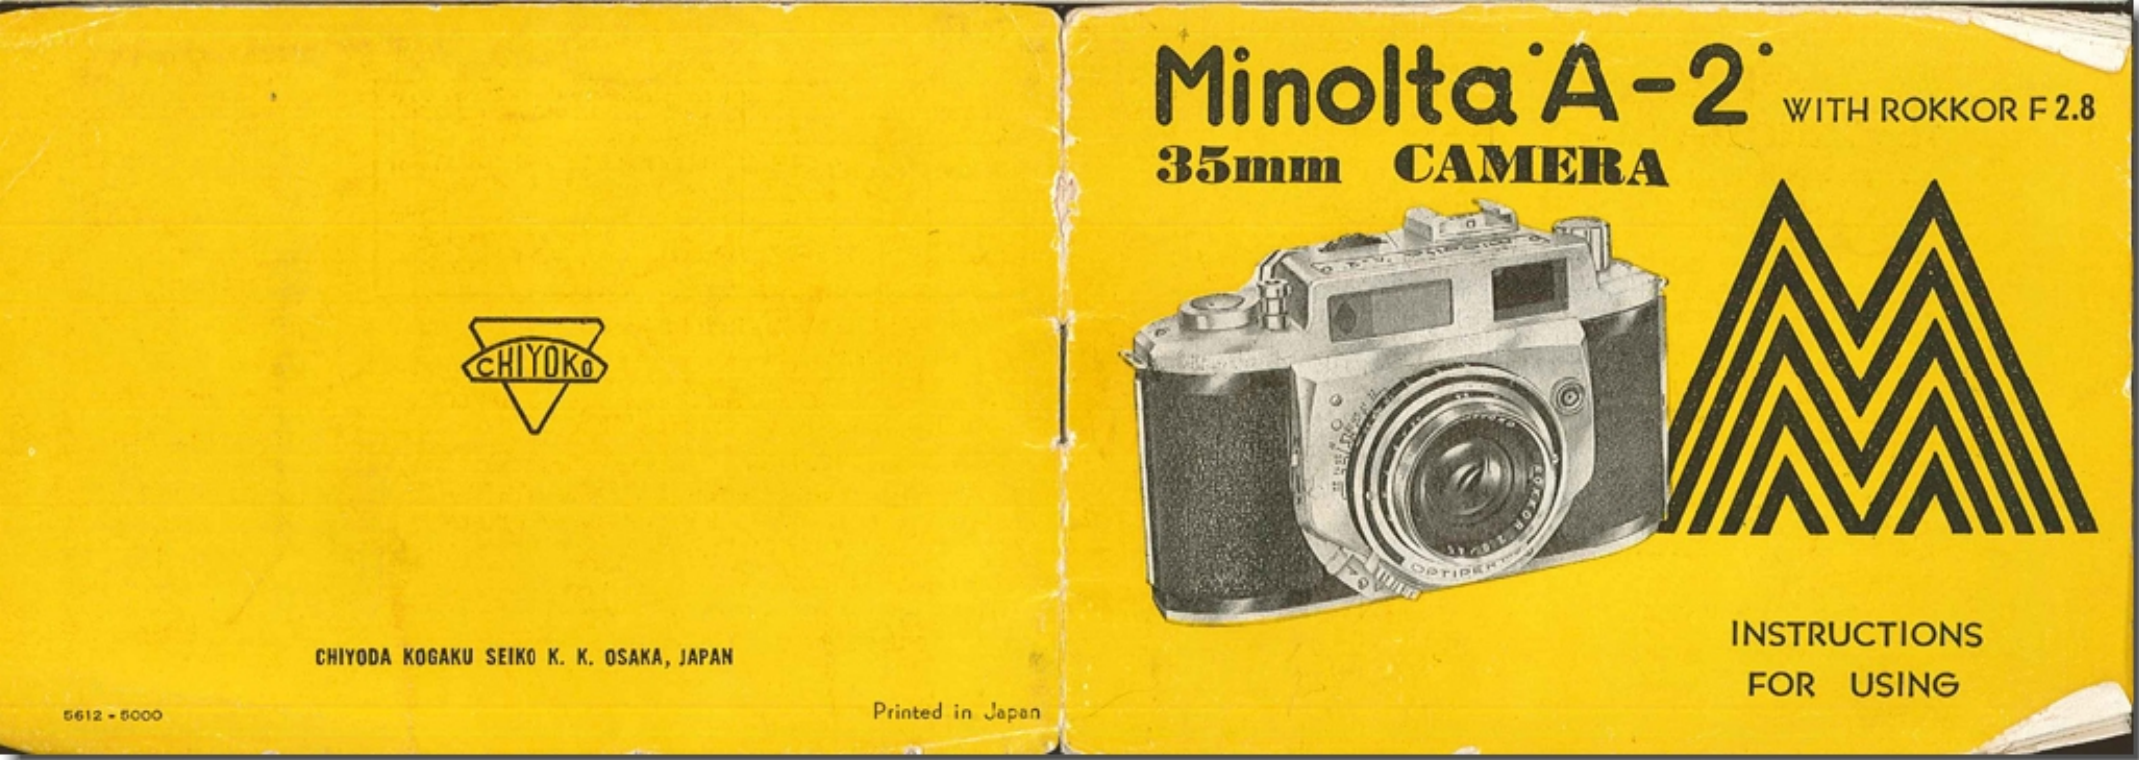 konica minolta camera manual